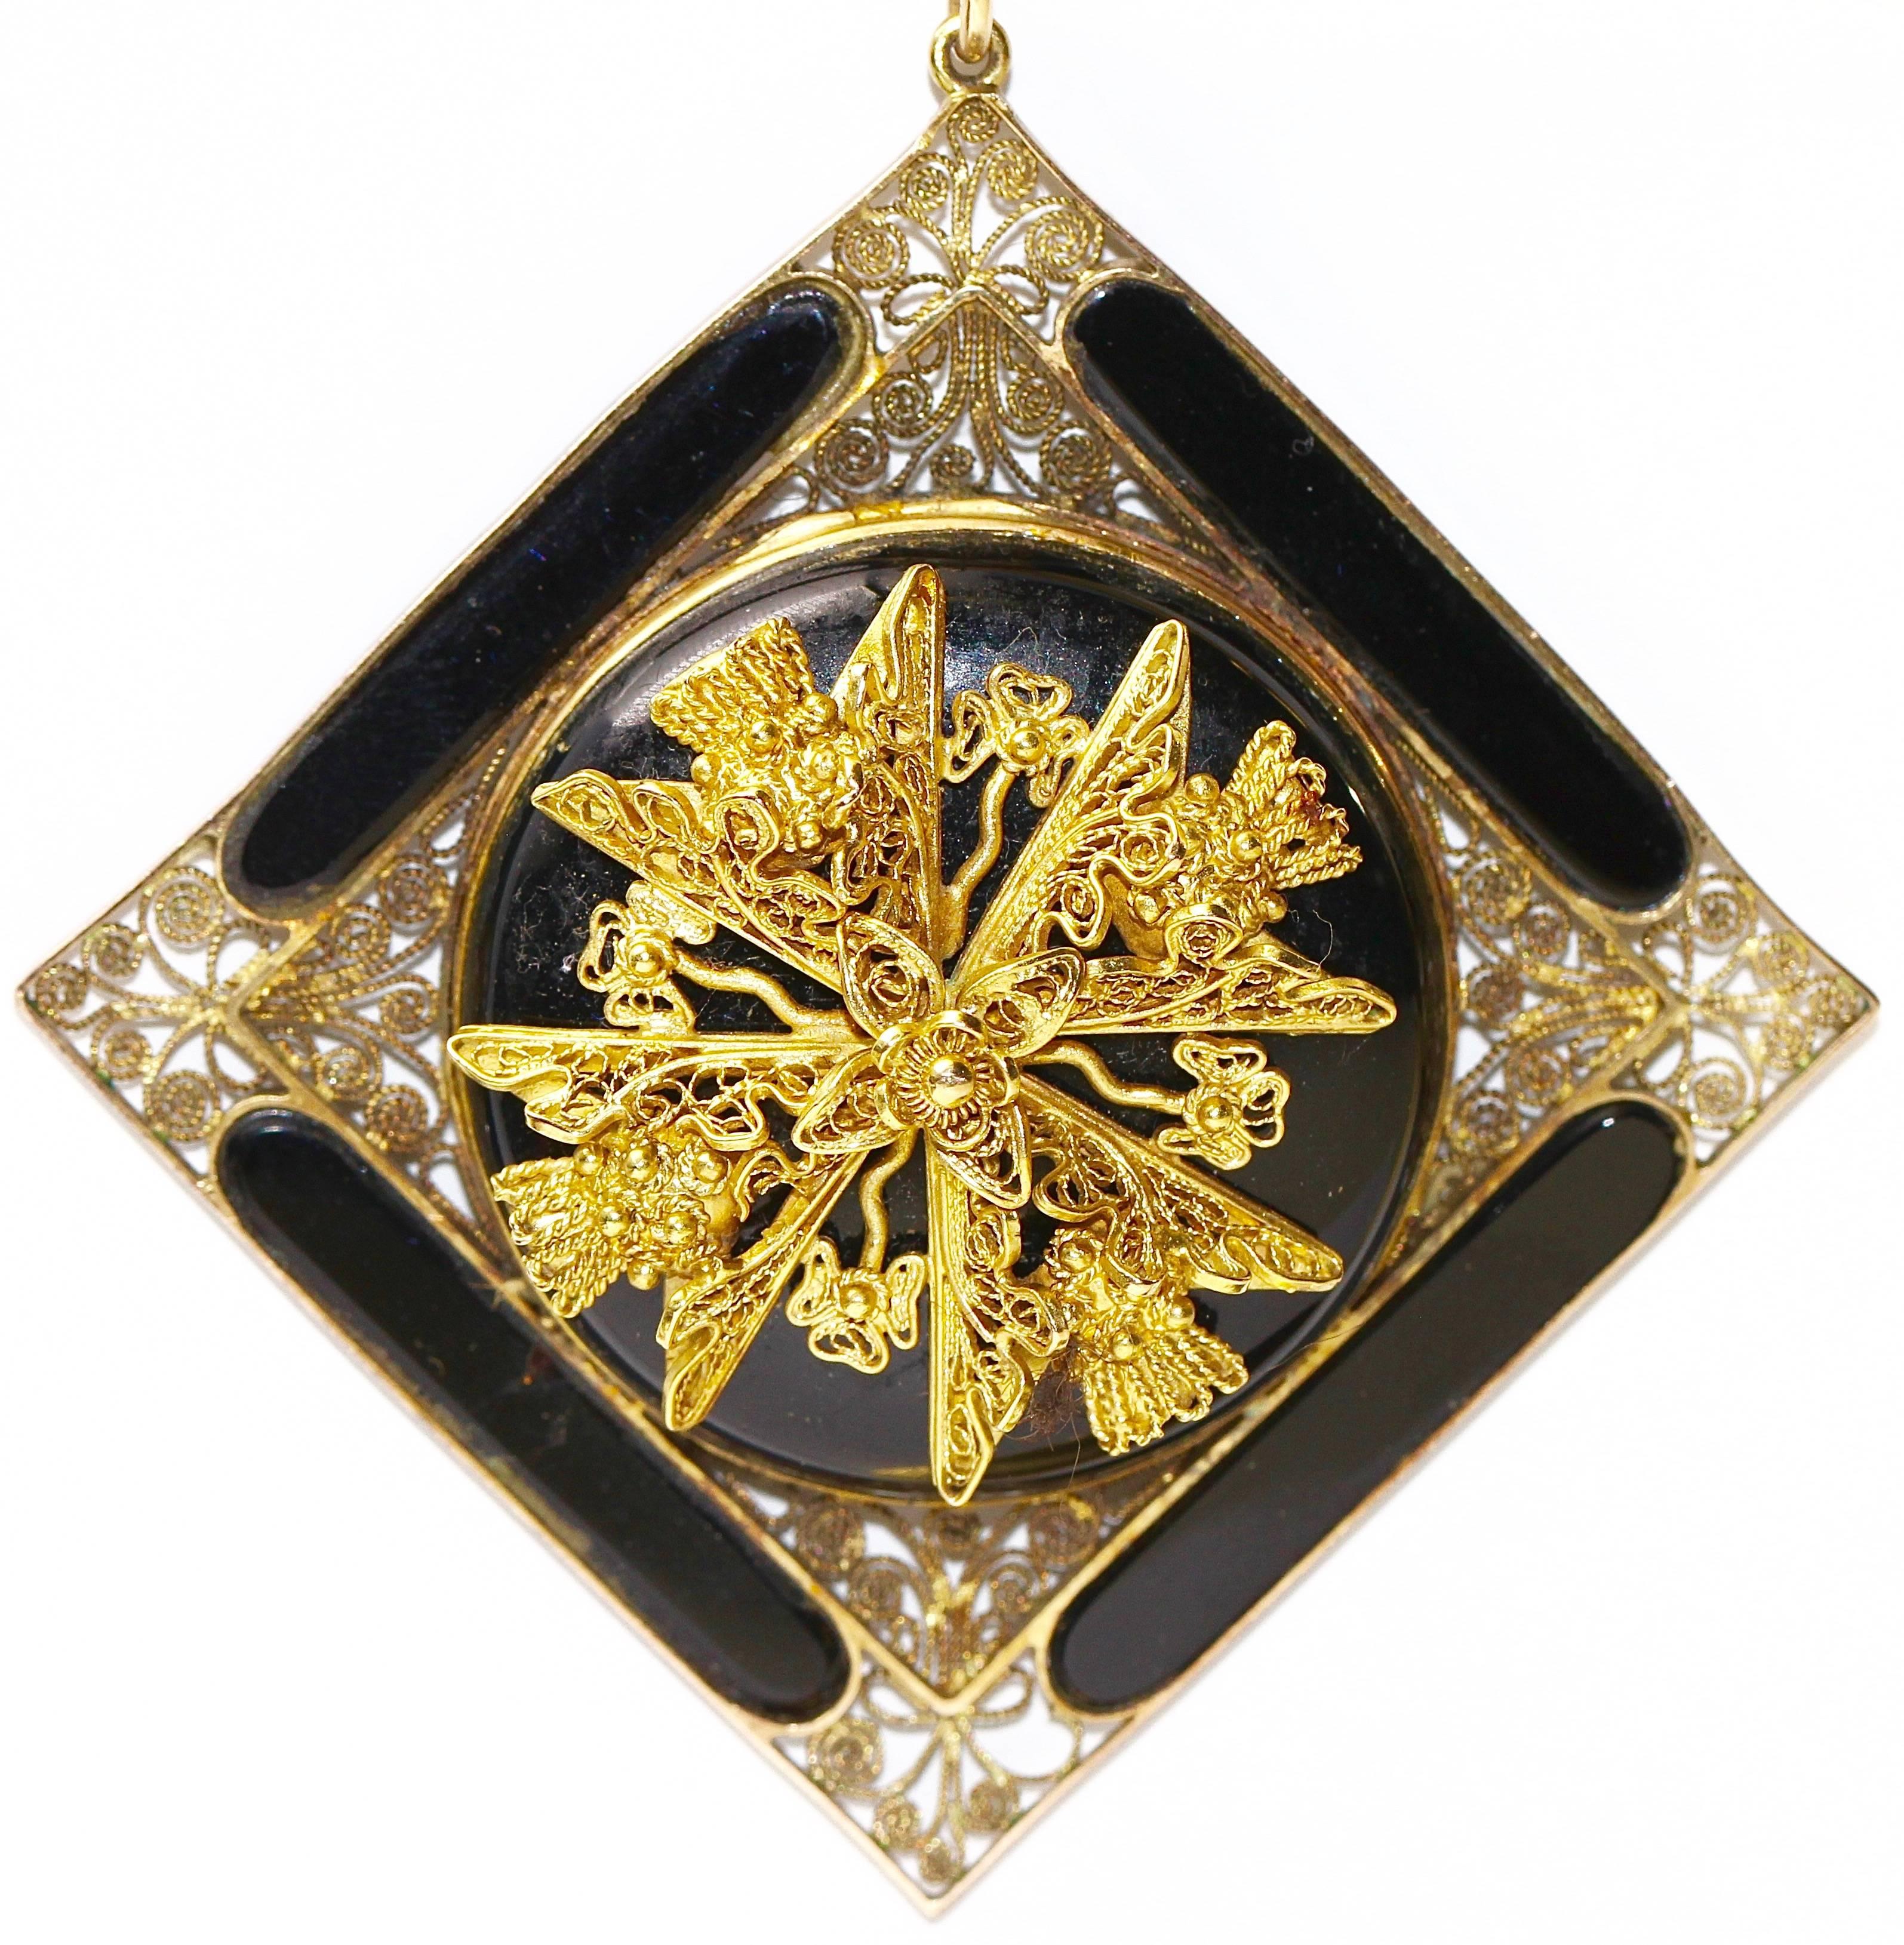 19th Century Antique Onyx Pendant, Enhancer 14k Gold with Floral Gold Appliqués